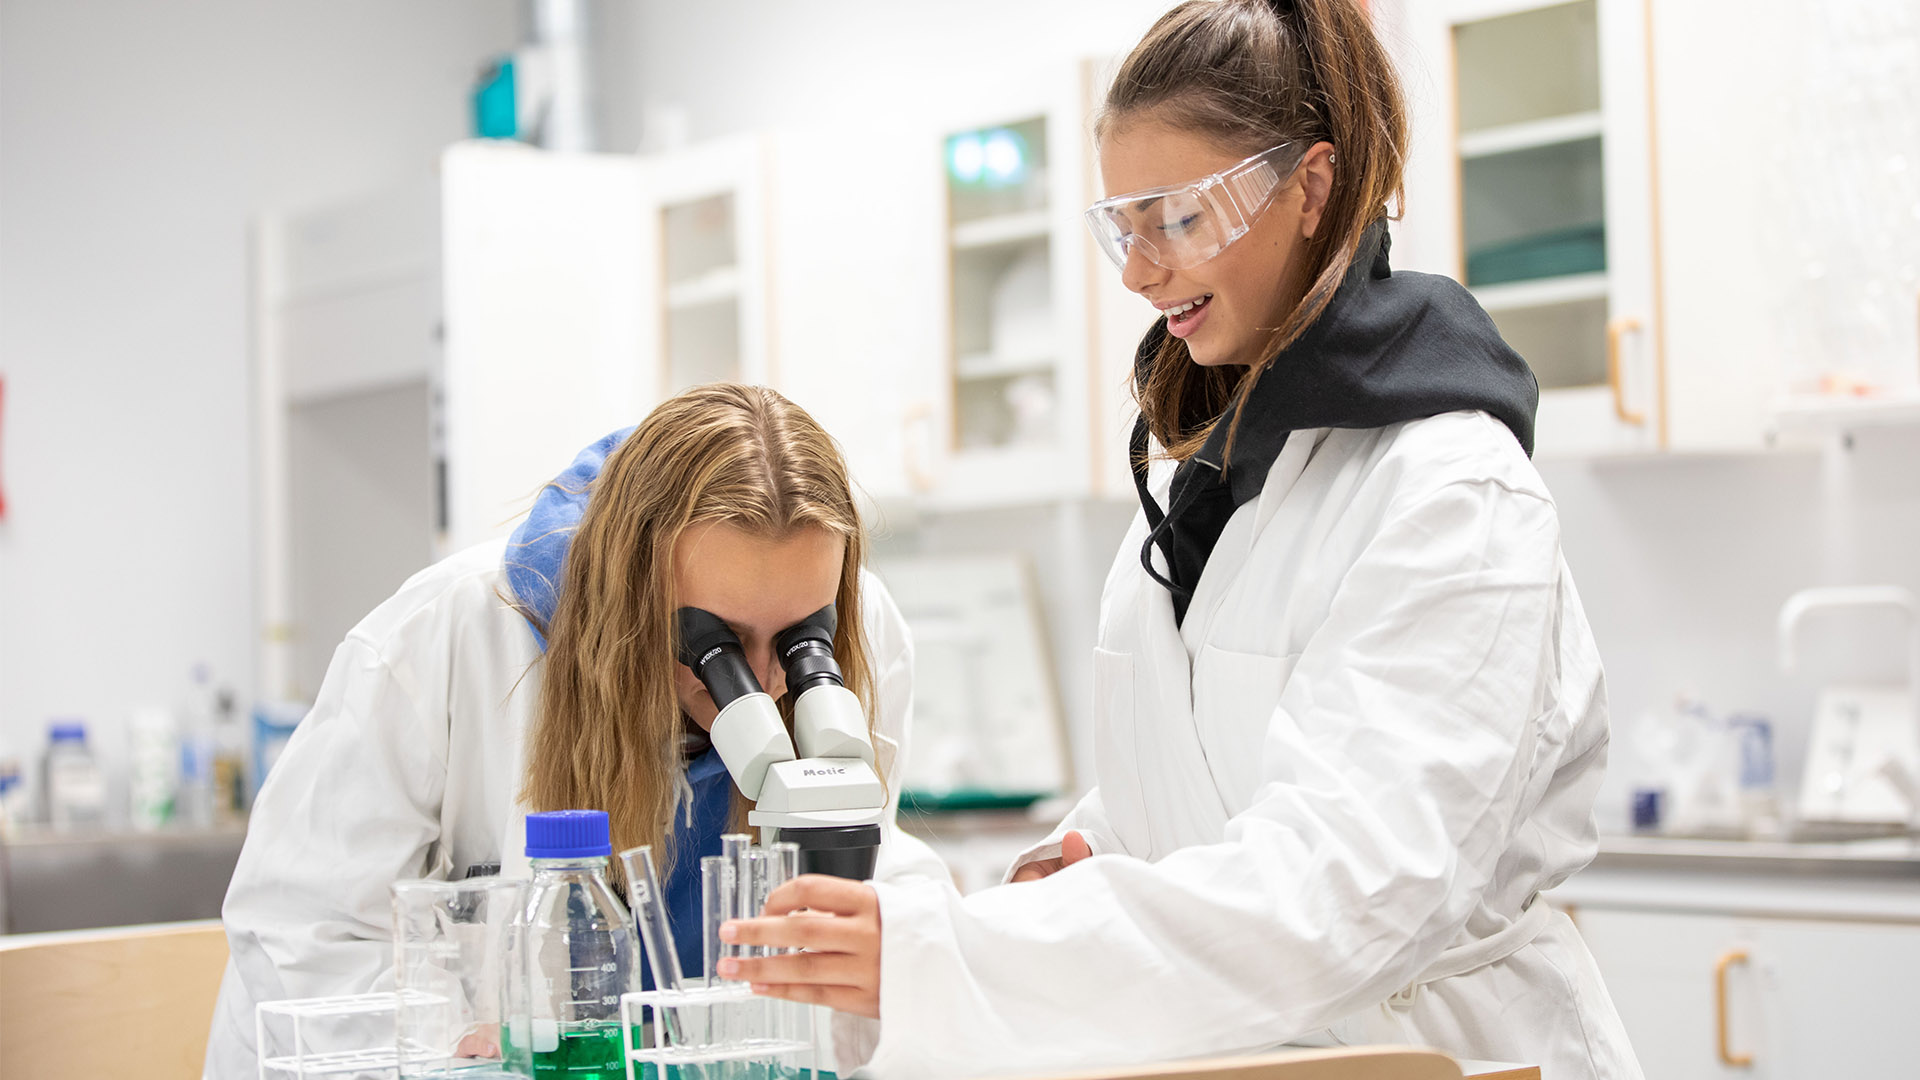 Två elever i vita labbrockar, en av de ser in i ett mikroskop medan den andra har skyddsglasögon och ser på